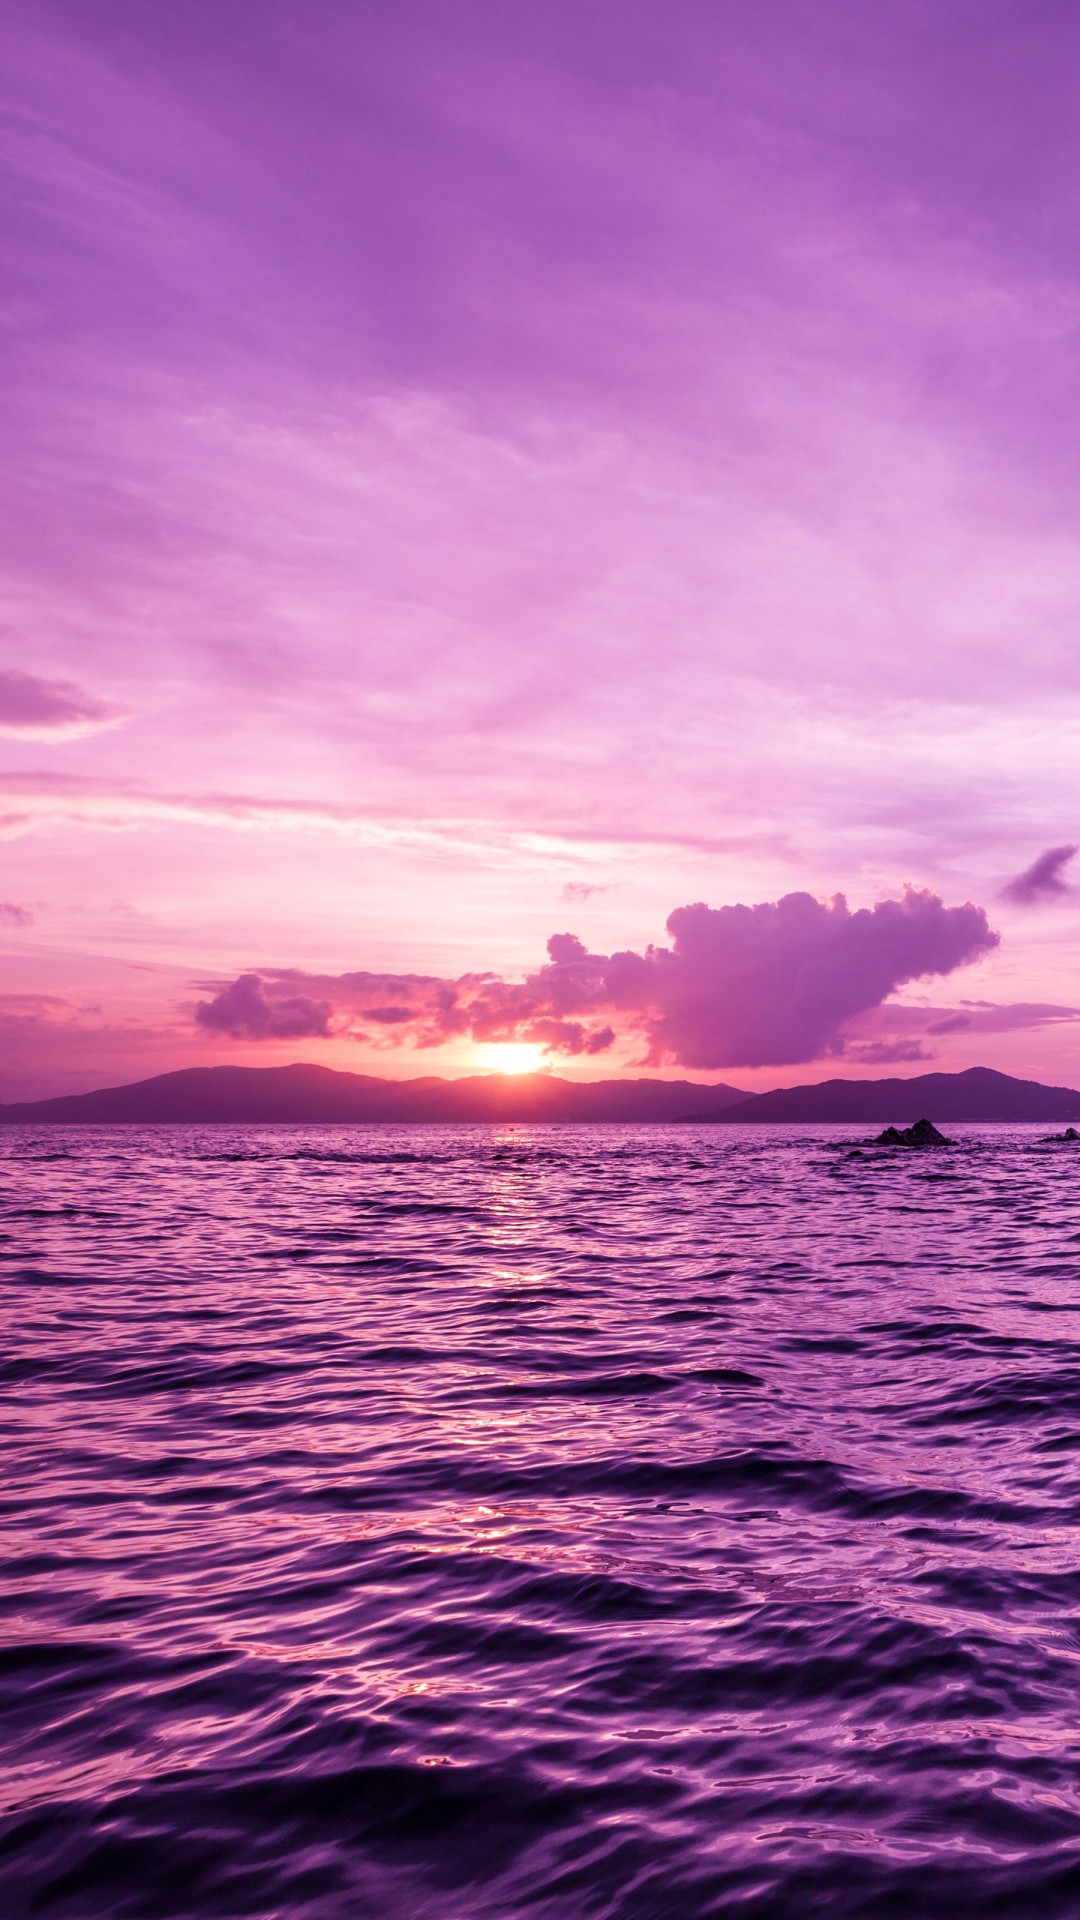 Pelican Island Sunset, British Virgin Islands Wallpaper for Google Nexus 5